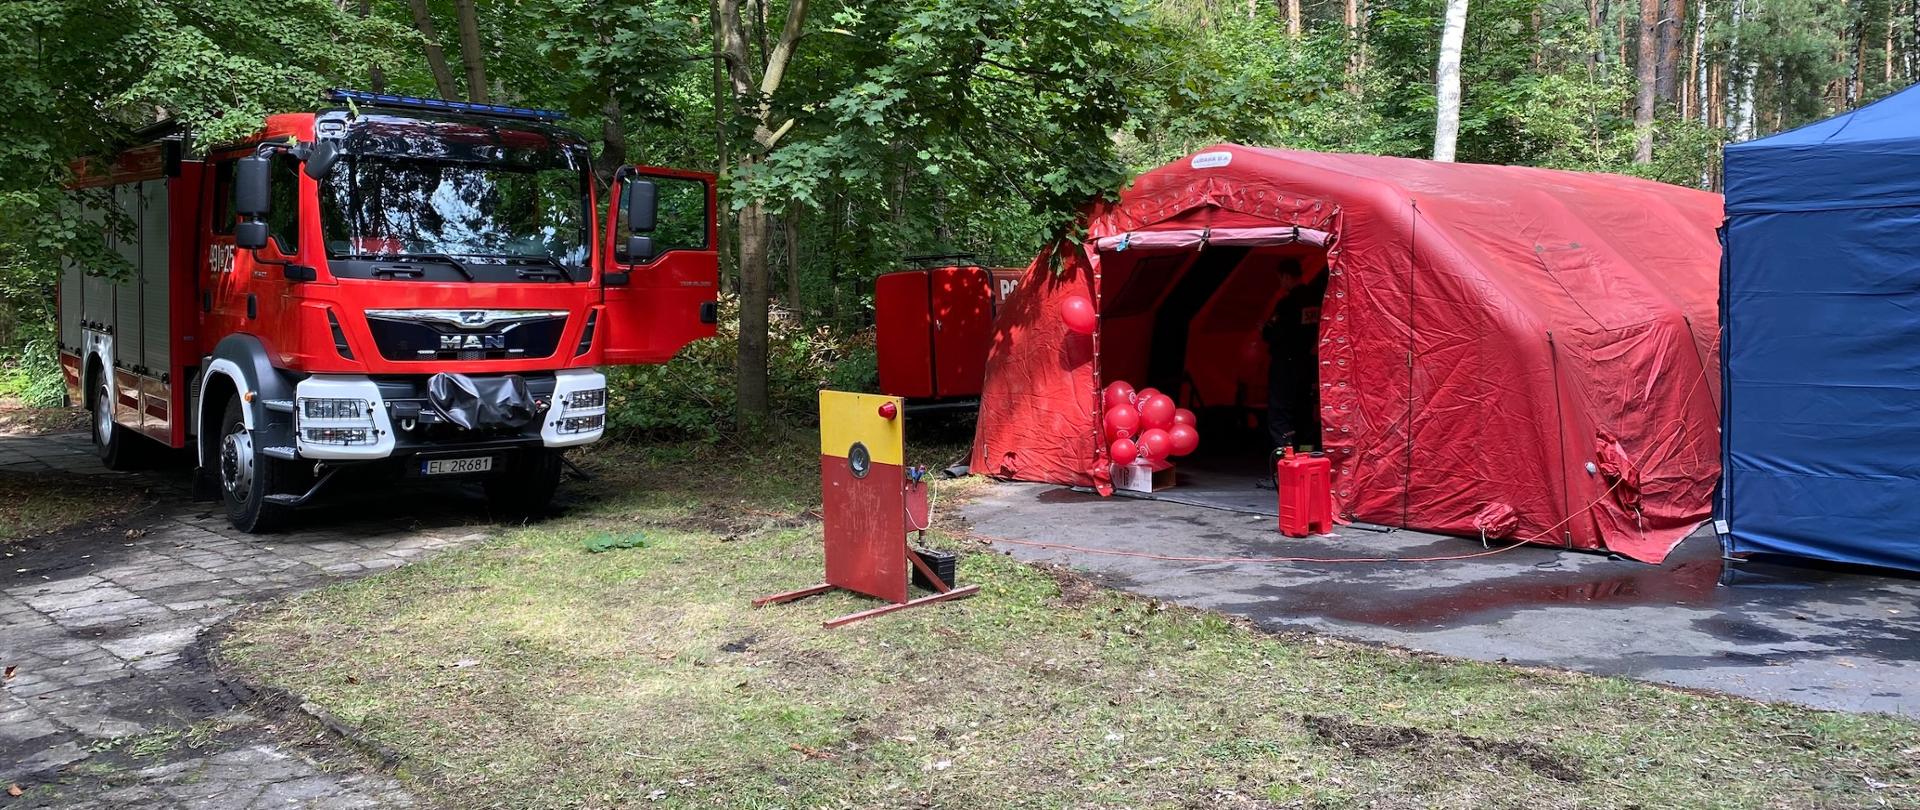 Samochód strażacki i czerwony namiot stoją w lesie